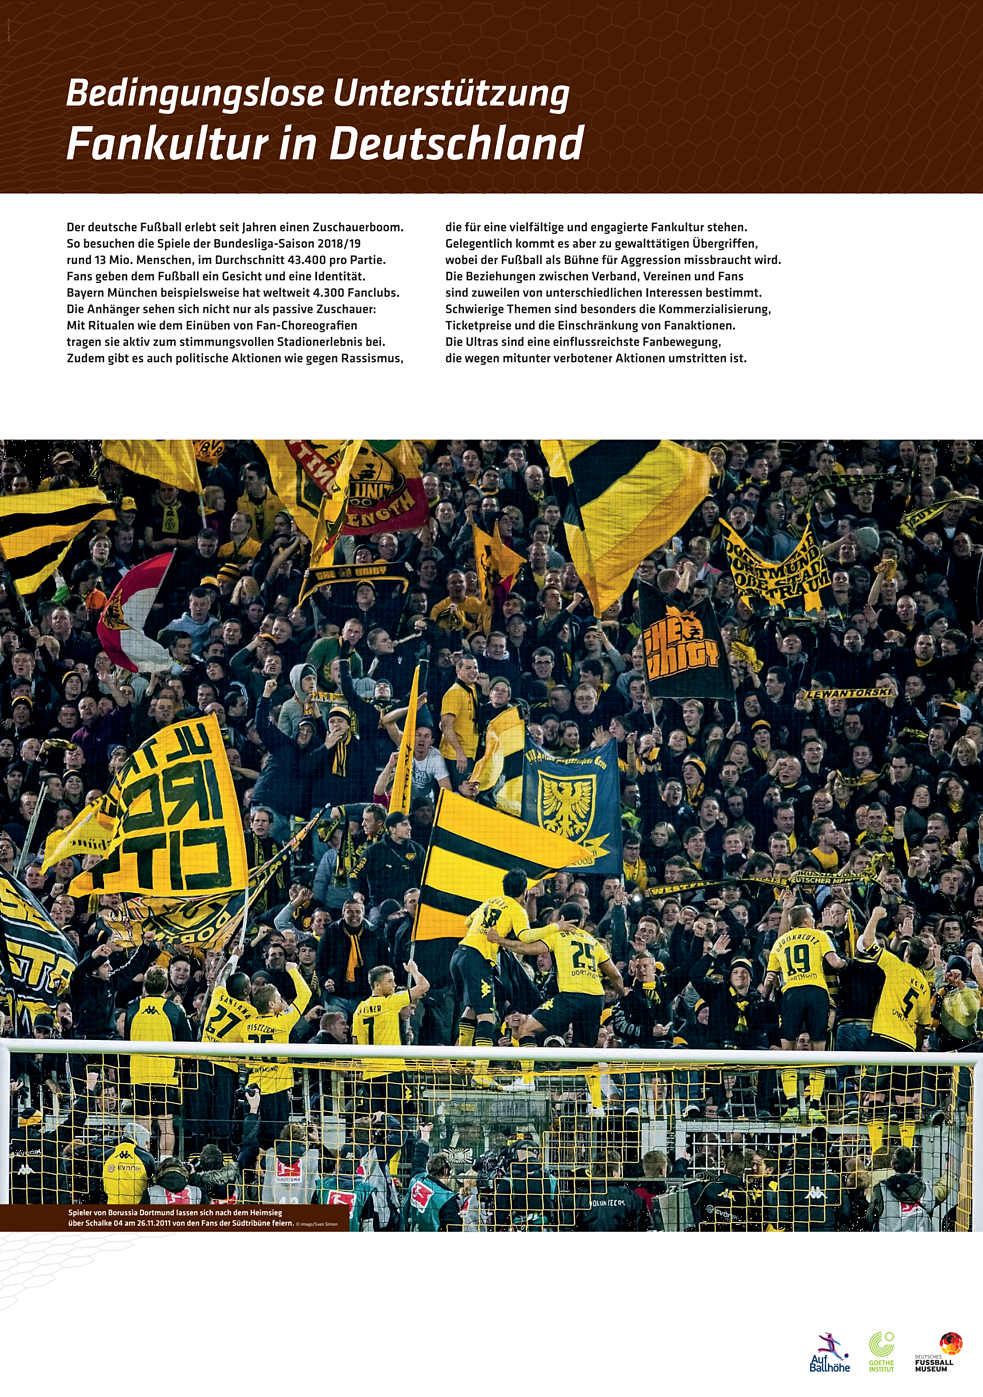 Poster tentang budaya penggemar dalam sepak bola Jerman